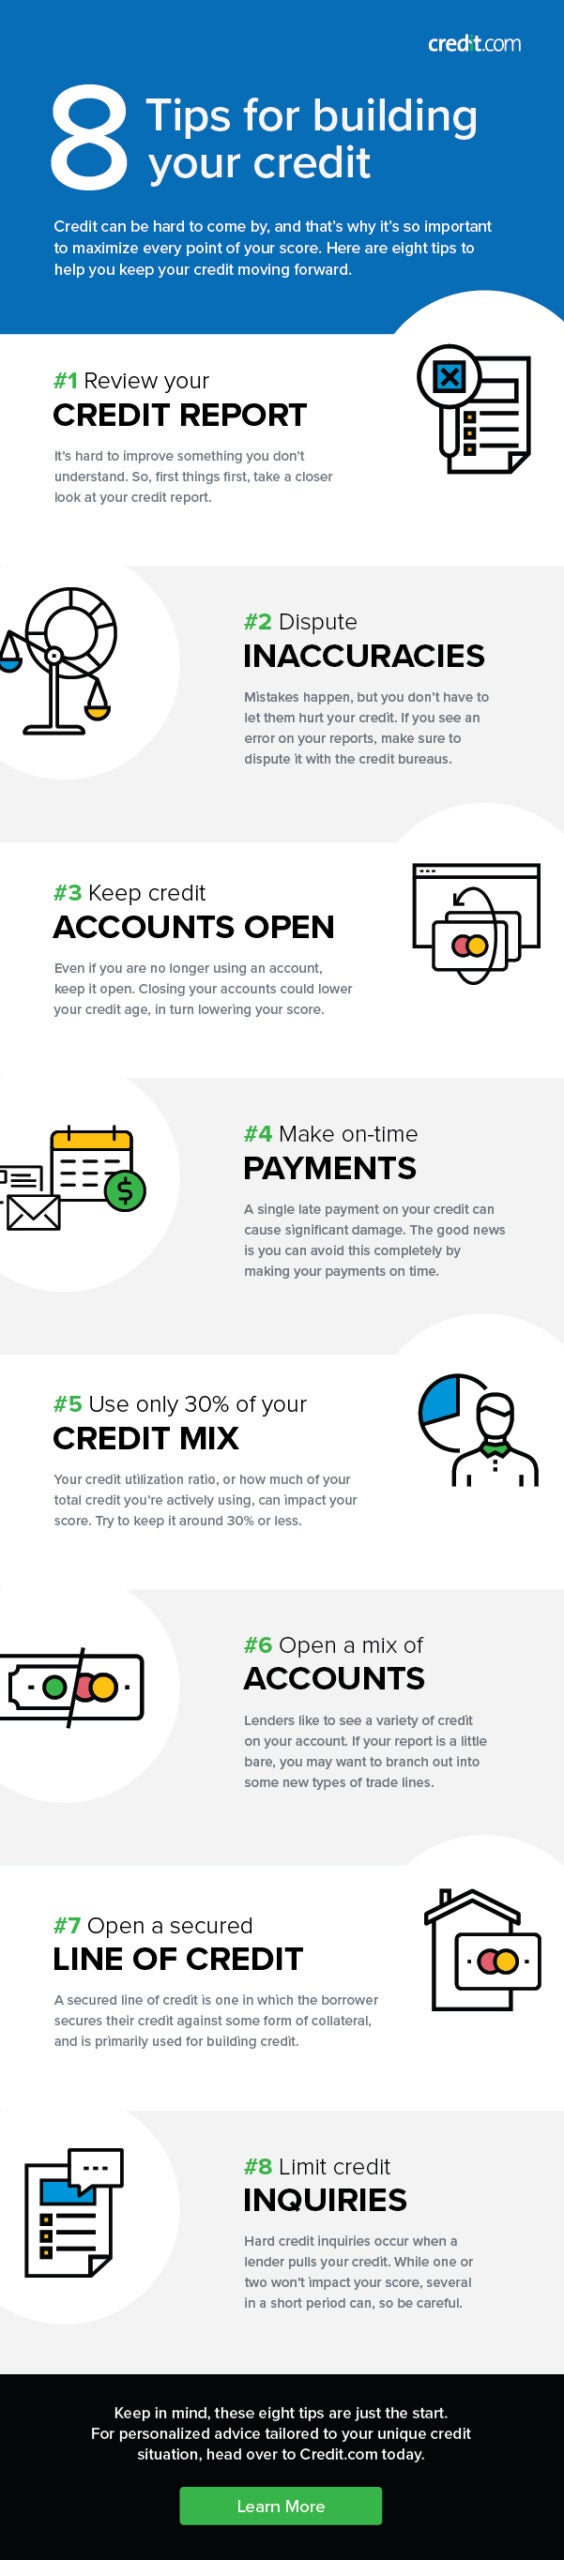 Credit accounts tips